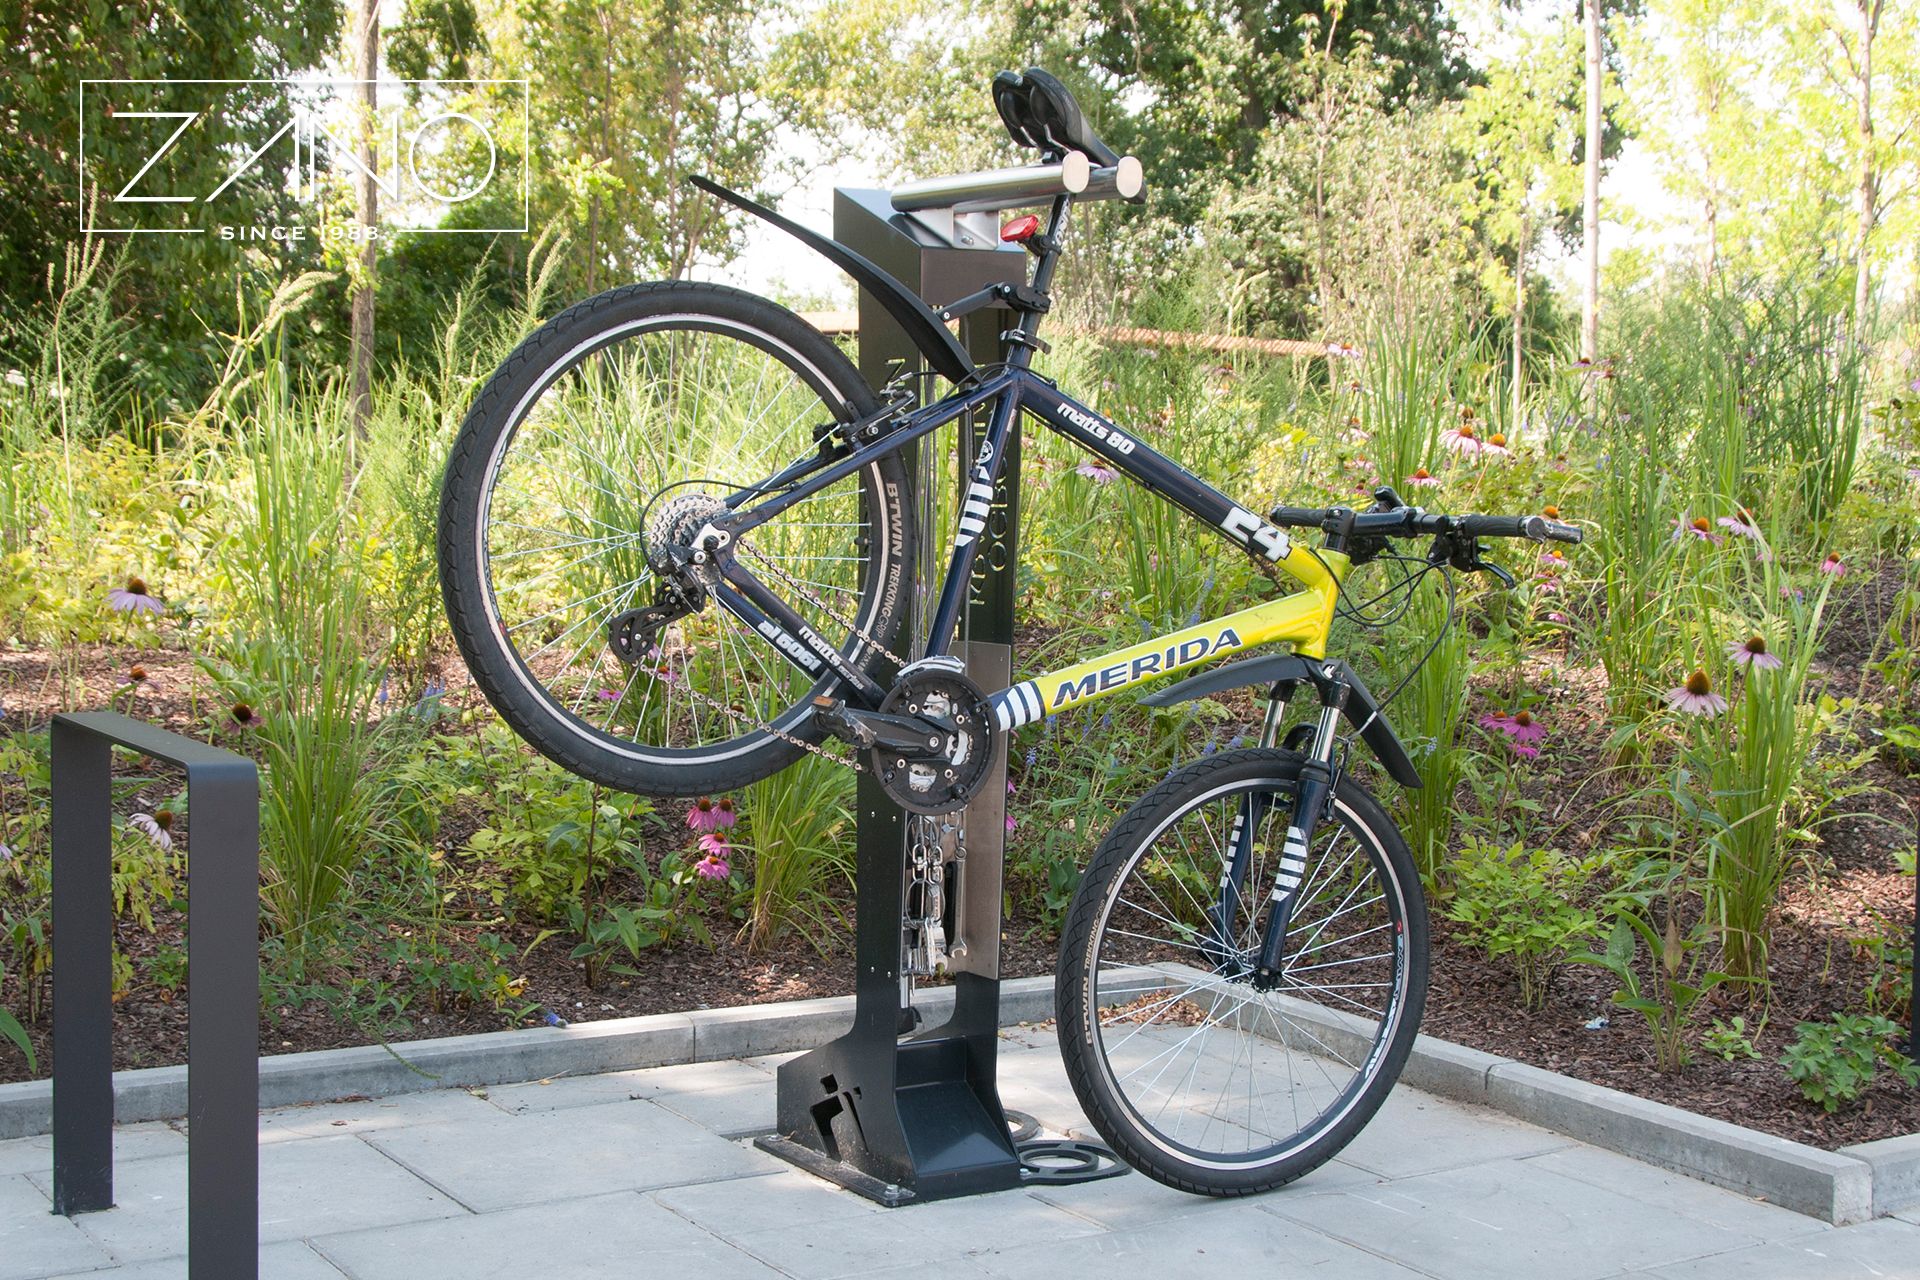 Stacja naprawcza dla rowerów Kangu